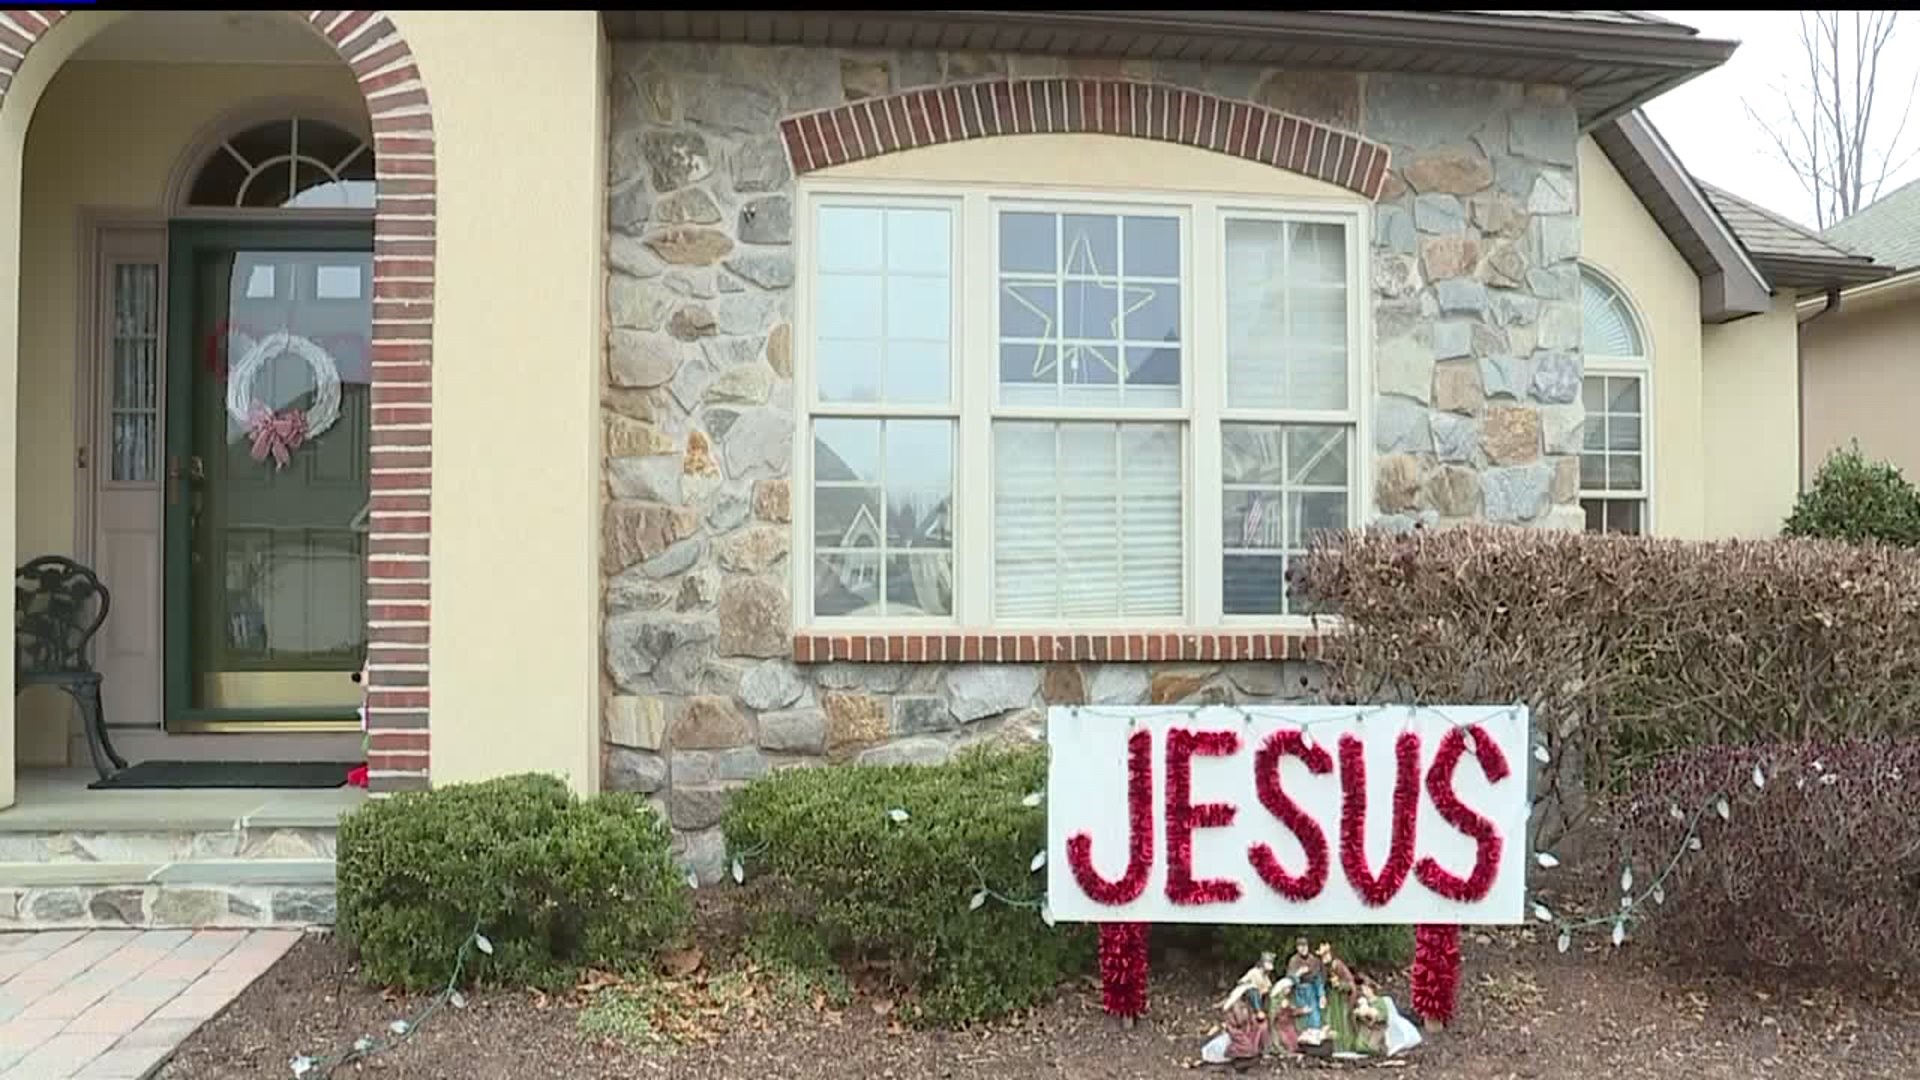 Adams county jesus sign controversy